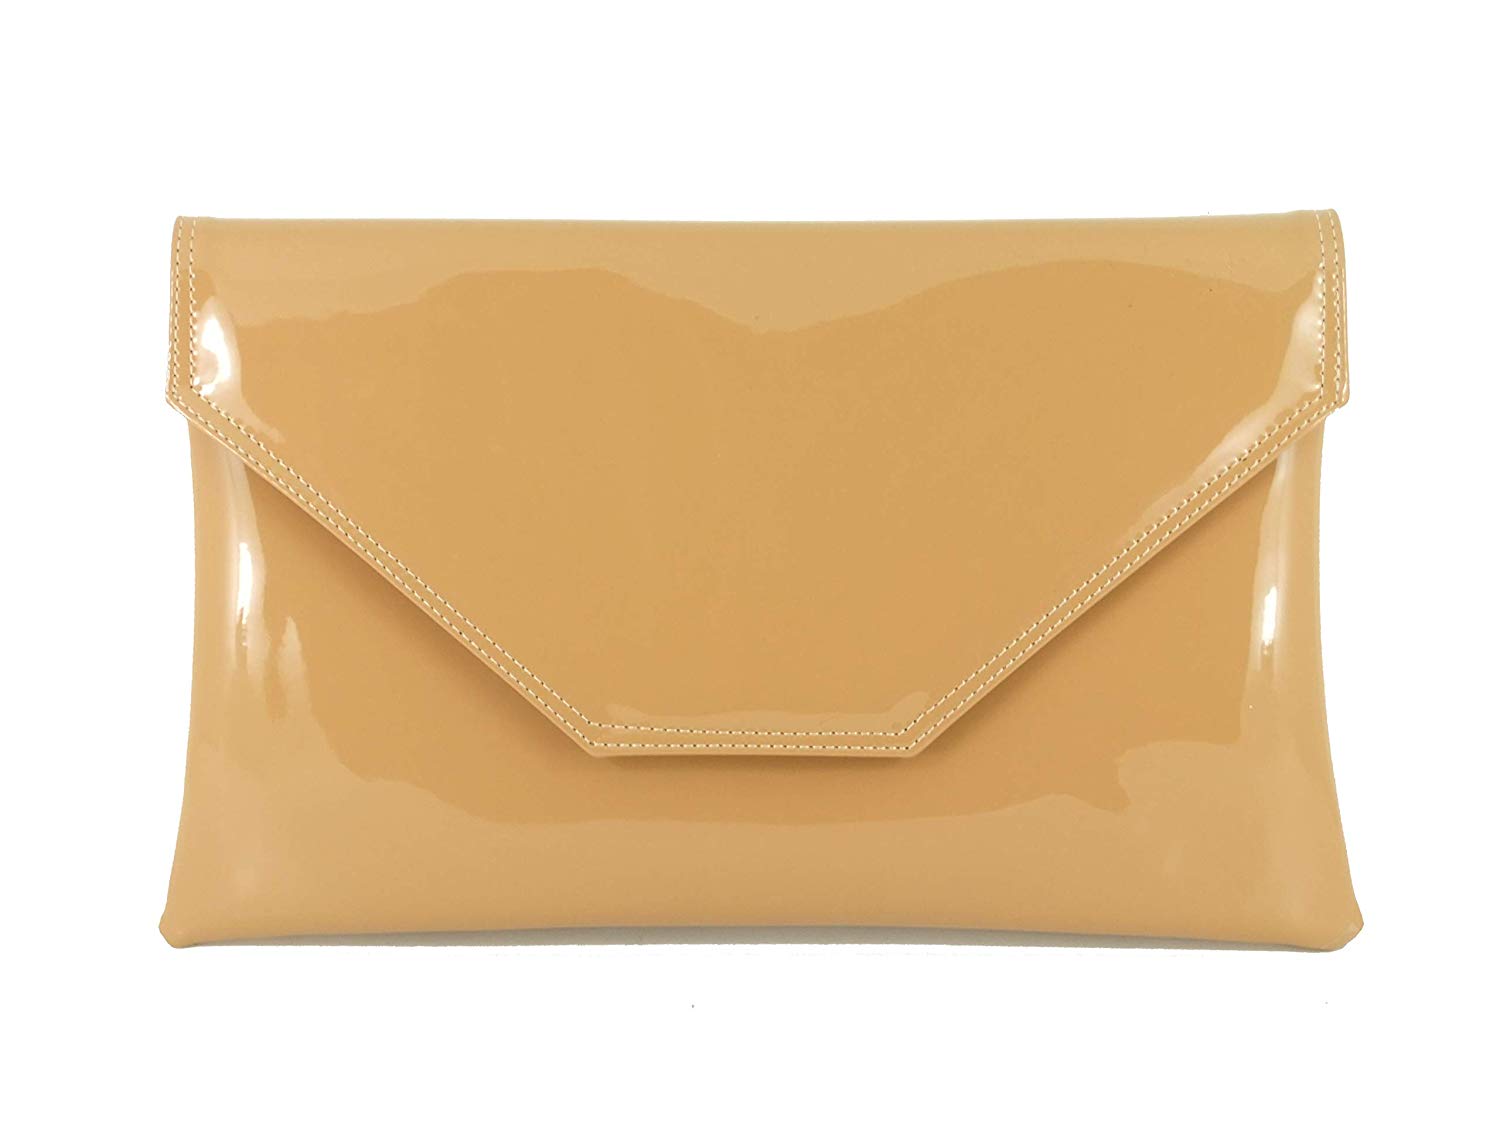 Big Handbag Shop Faux Leather Envelope Clutch Bag with Shoulder Strap 